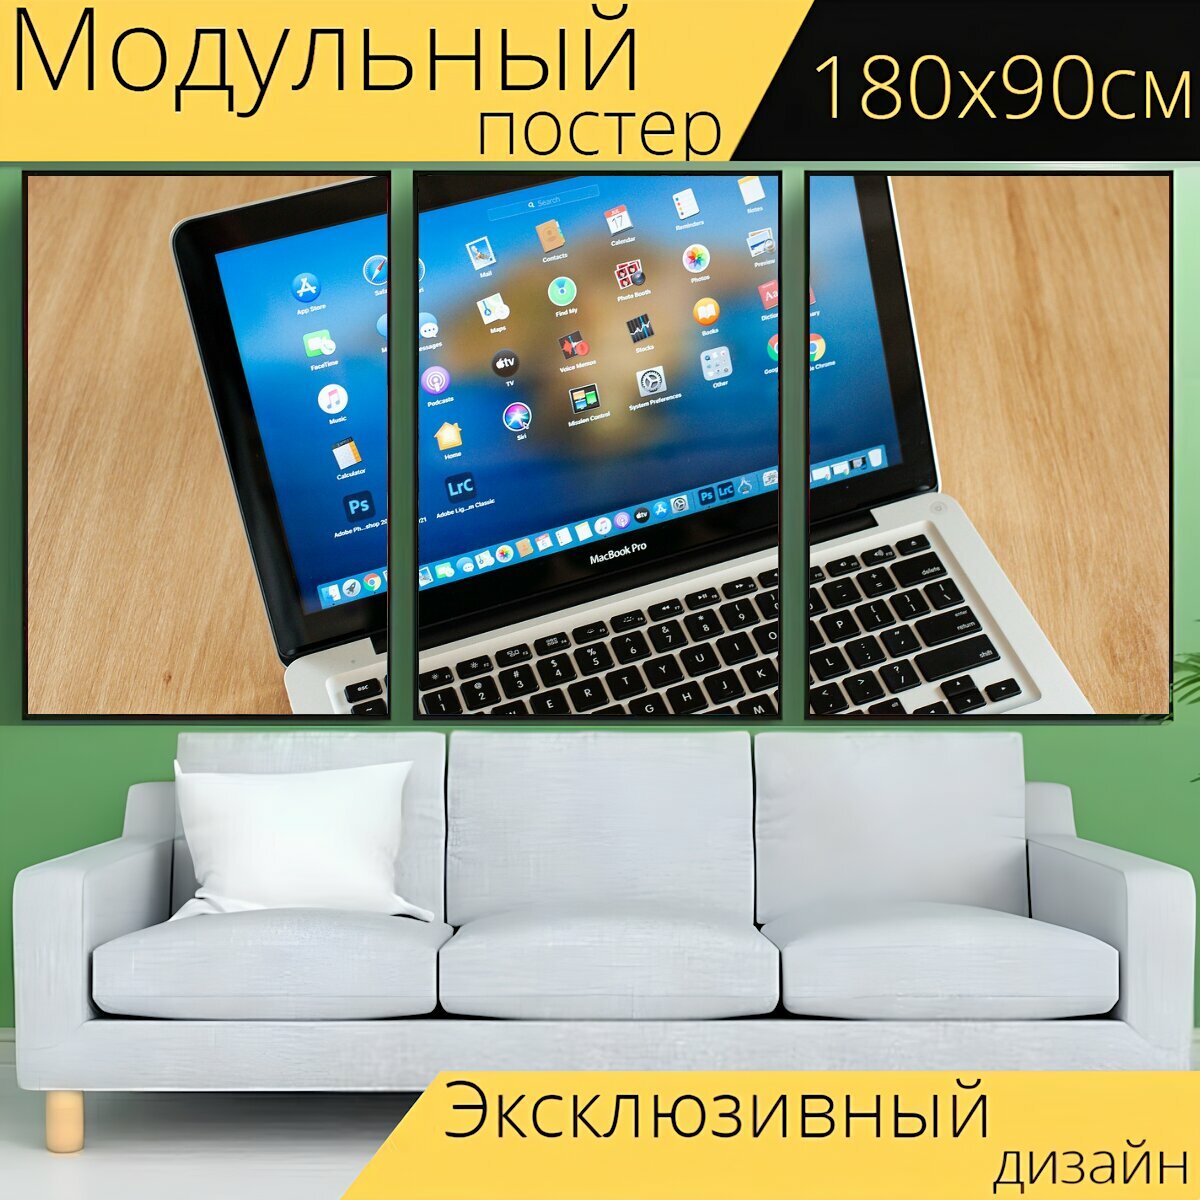 Модульный постер "Ноутбук, экран монитора, стол письменный" 180 x 90 см. для интерьера